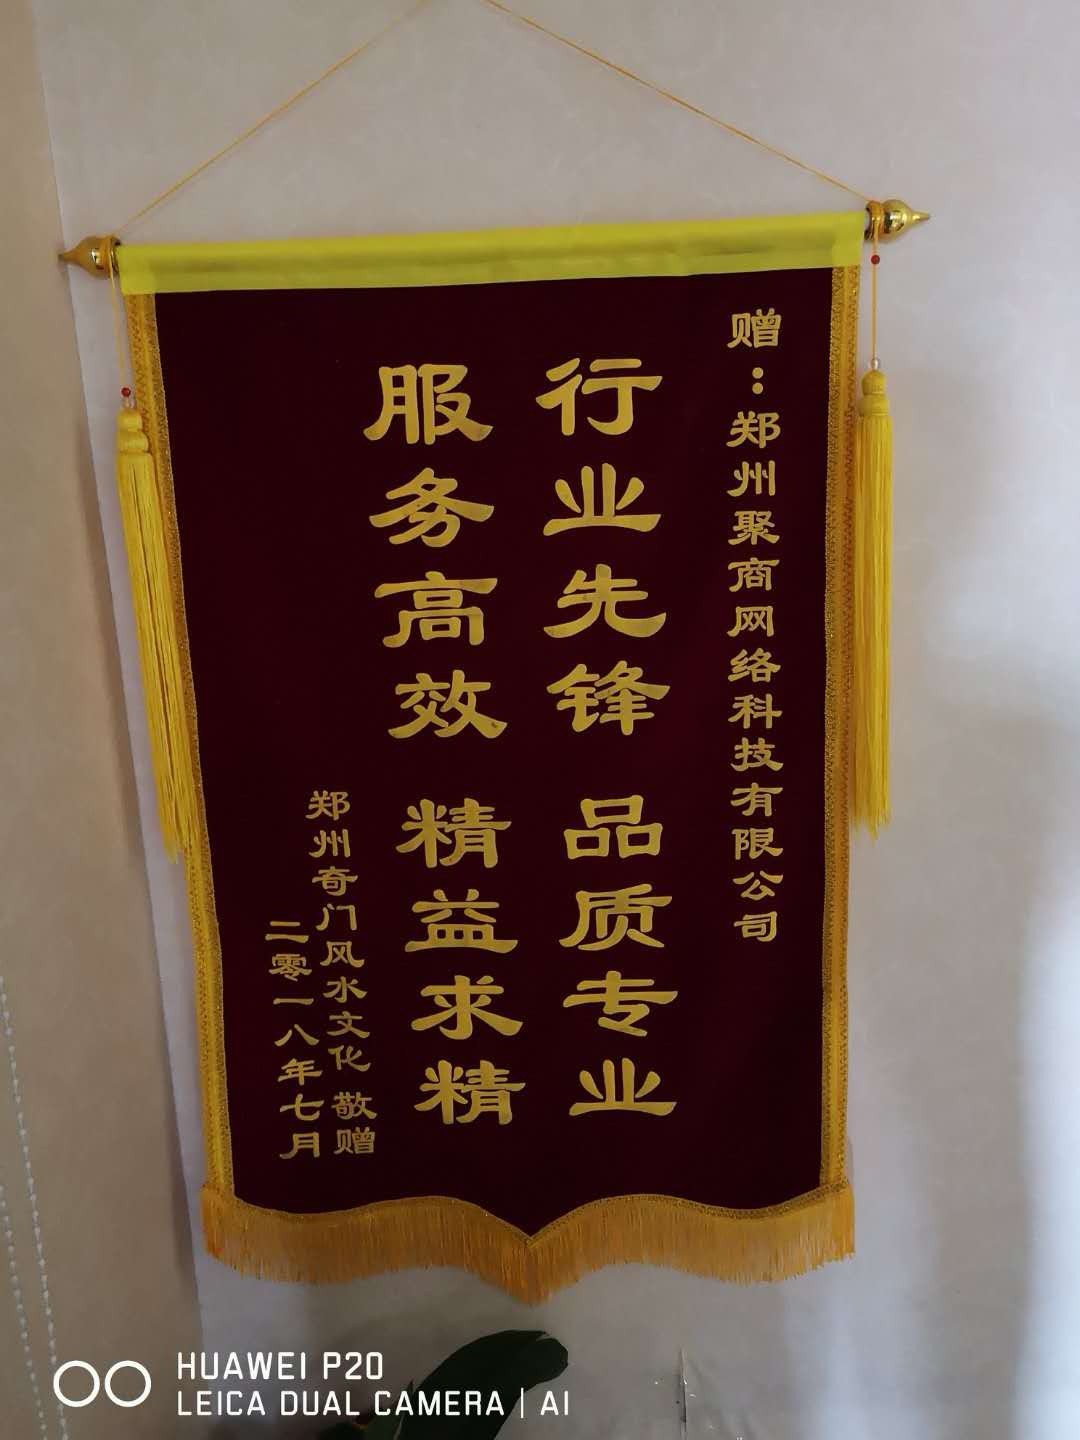 郑州奇门文化传播有限公司赠送的锦旗